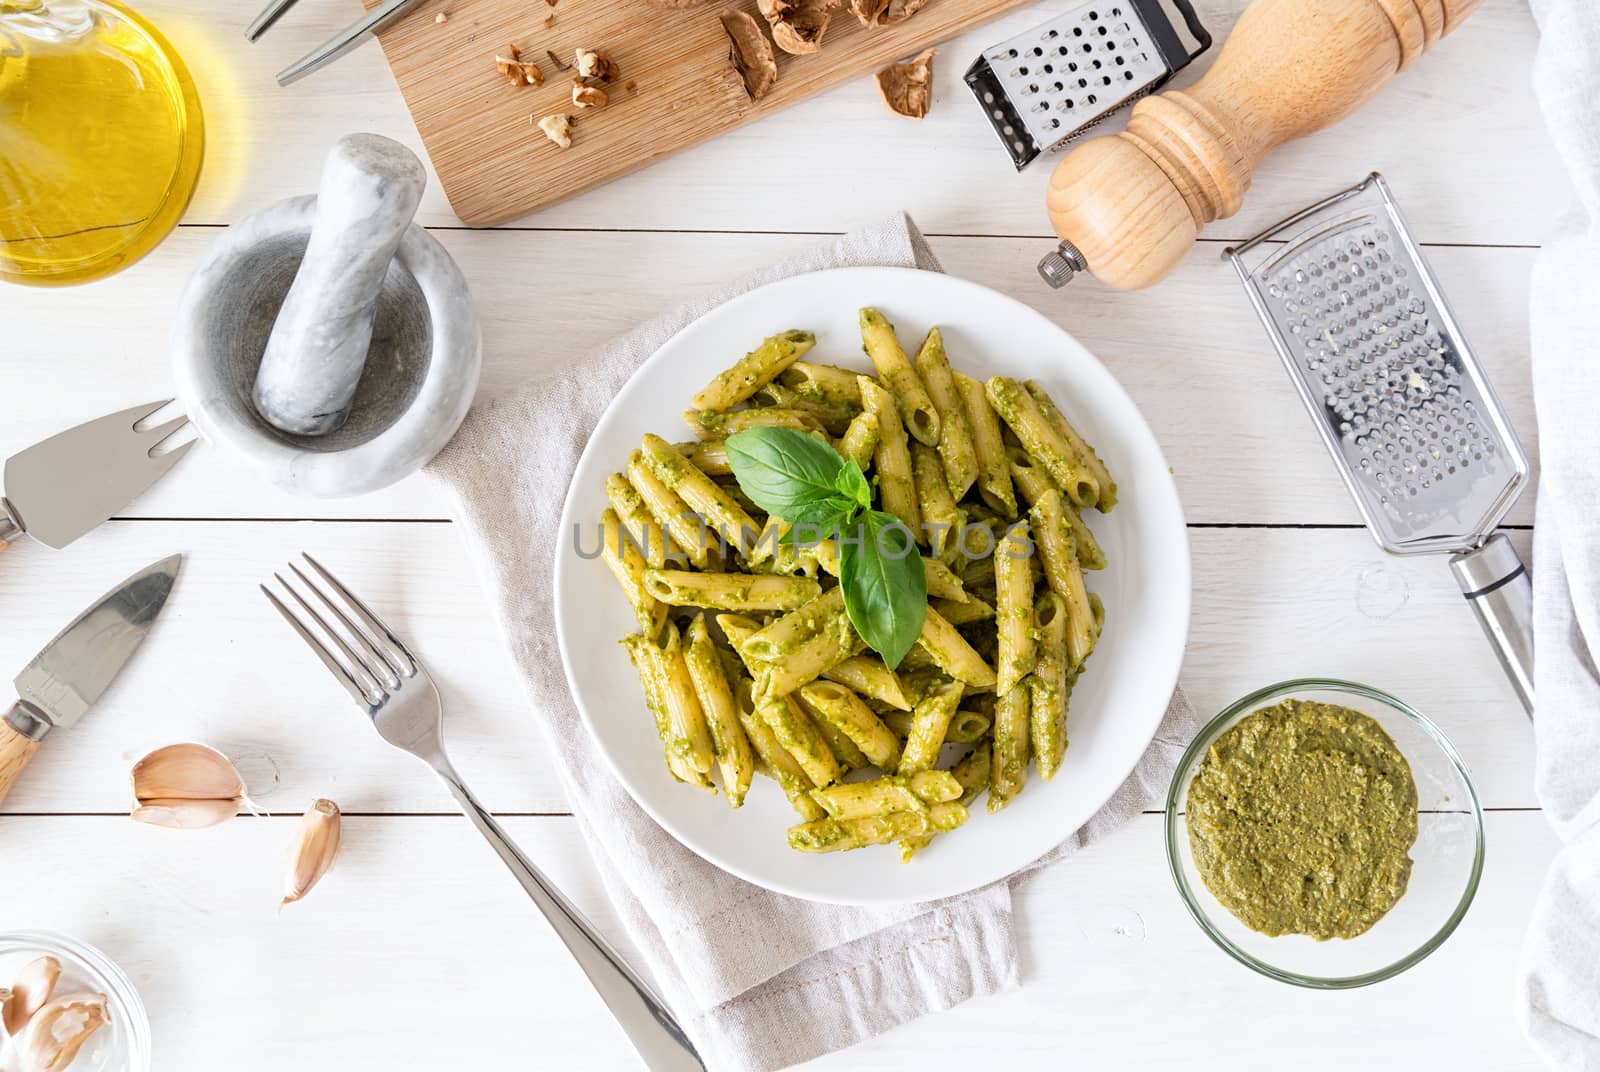 Step by step cooking italian pesto sauce. Step 9 - adding pesto to pasta